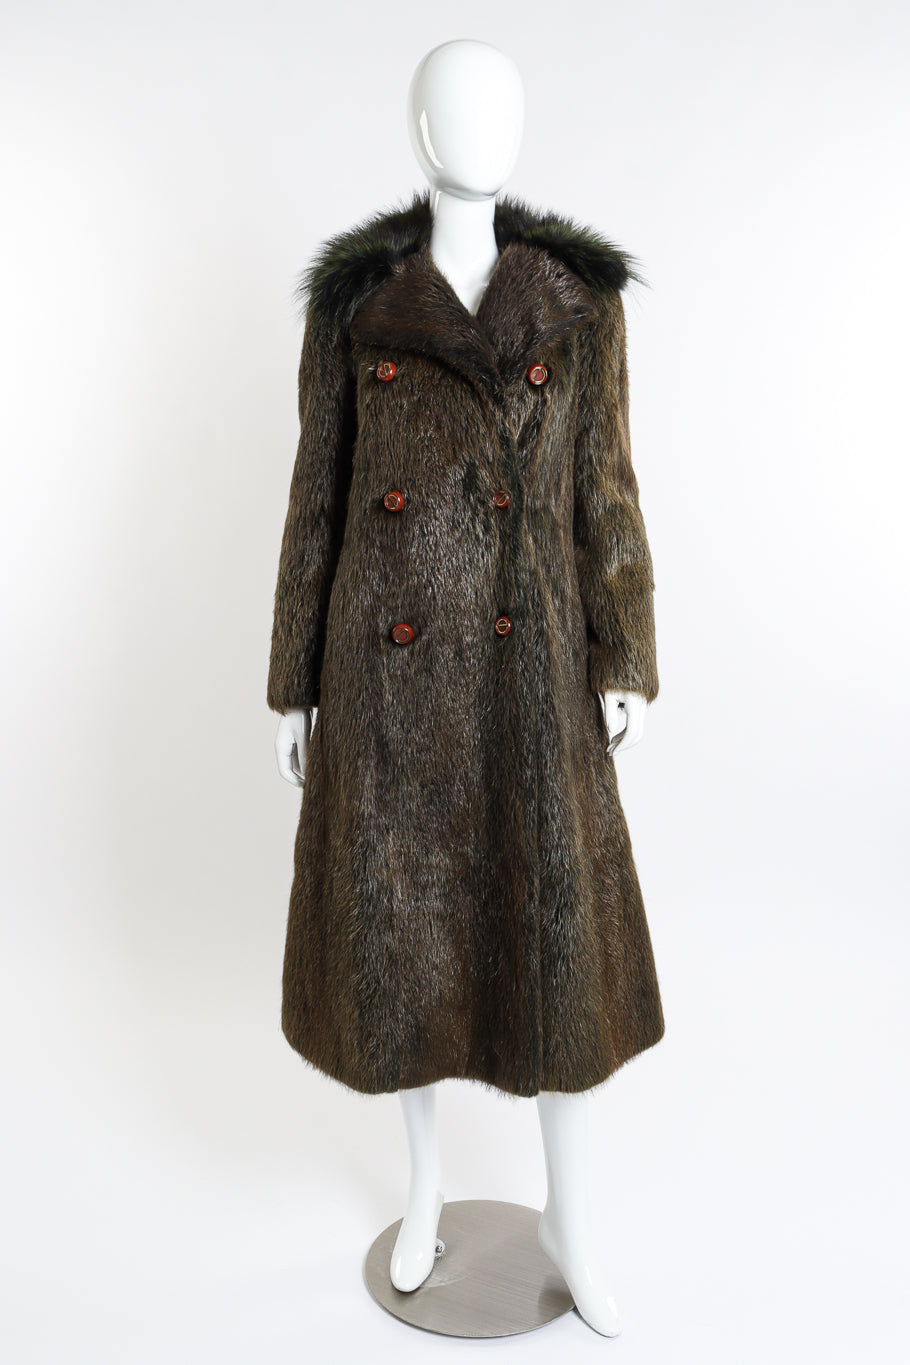 Vintage Christian Dior Long Fur Coat front on mannequin unbelted @recessla